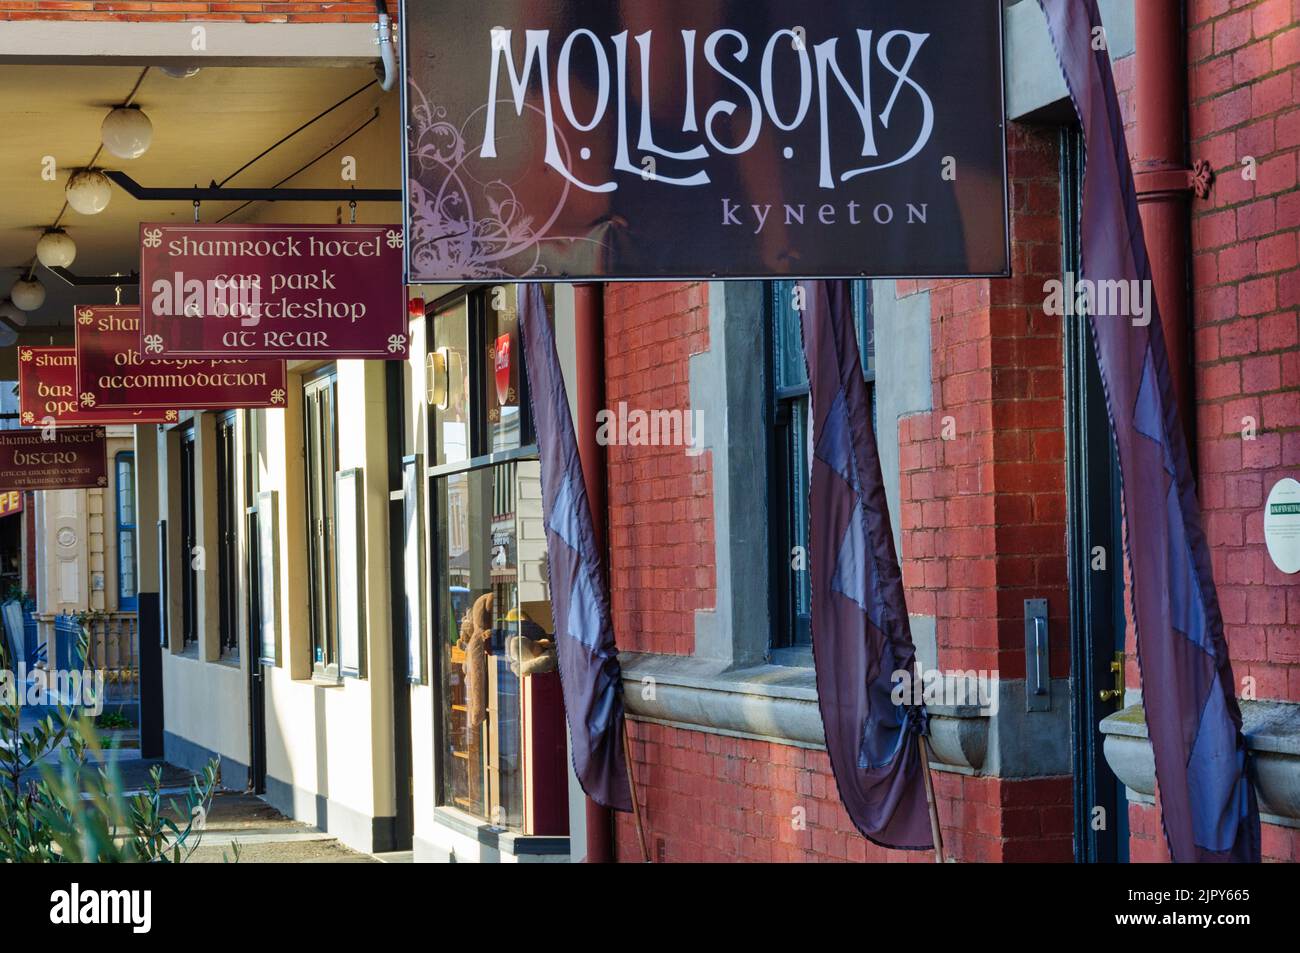 Hotels on Mollison Street - Kyneton, Victoria, Australia Stock Photo